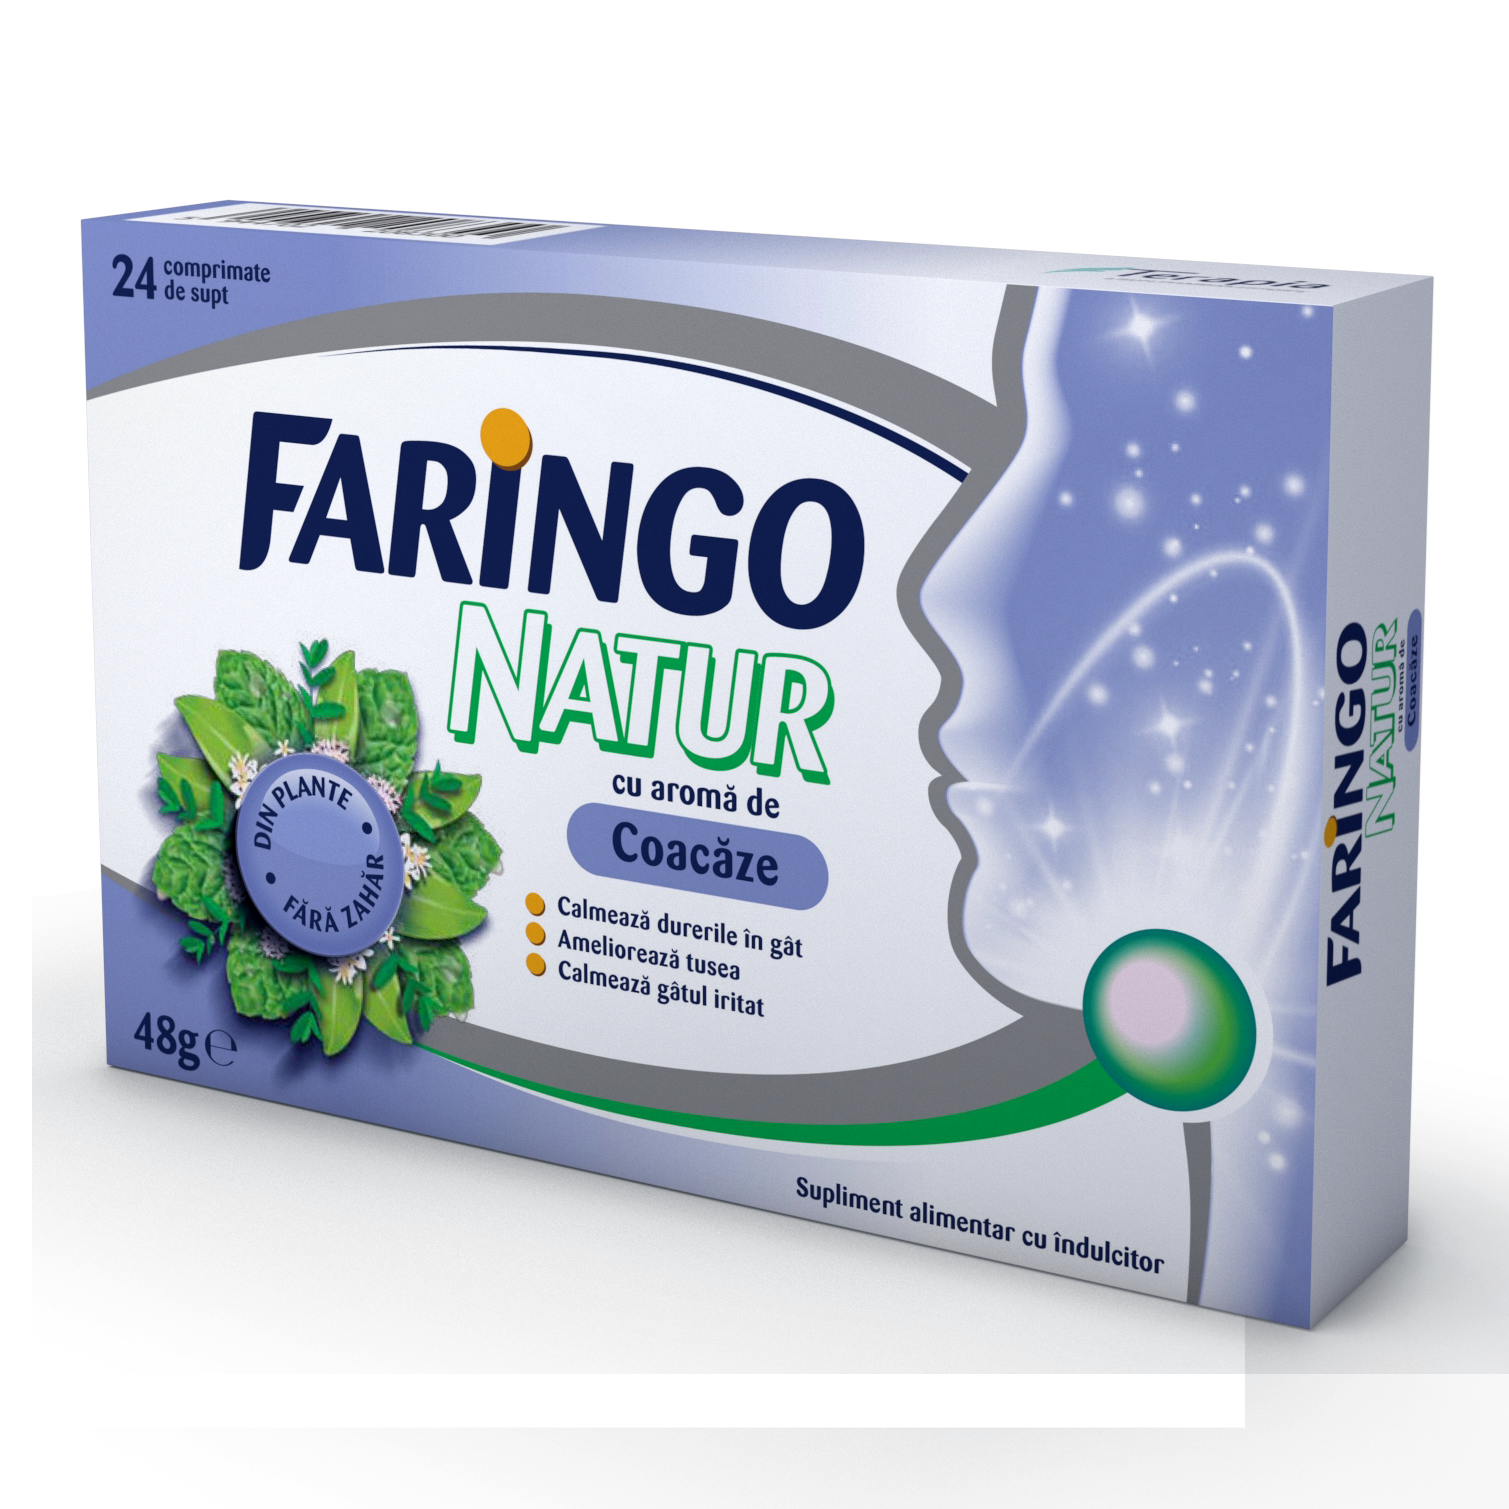 Faringo Natur cu aroma de coacaze, 24 comprimate, Terapia